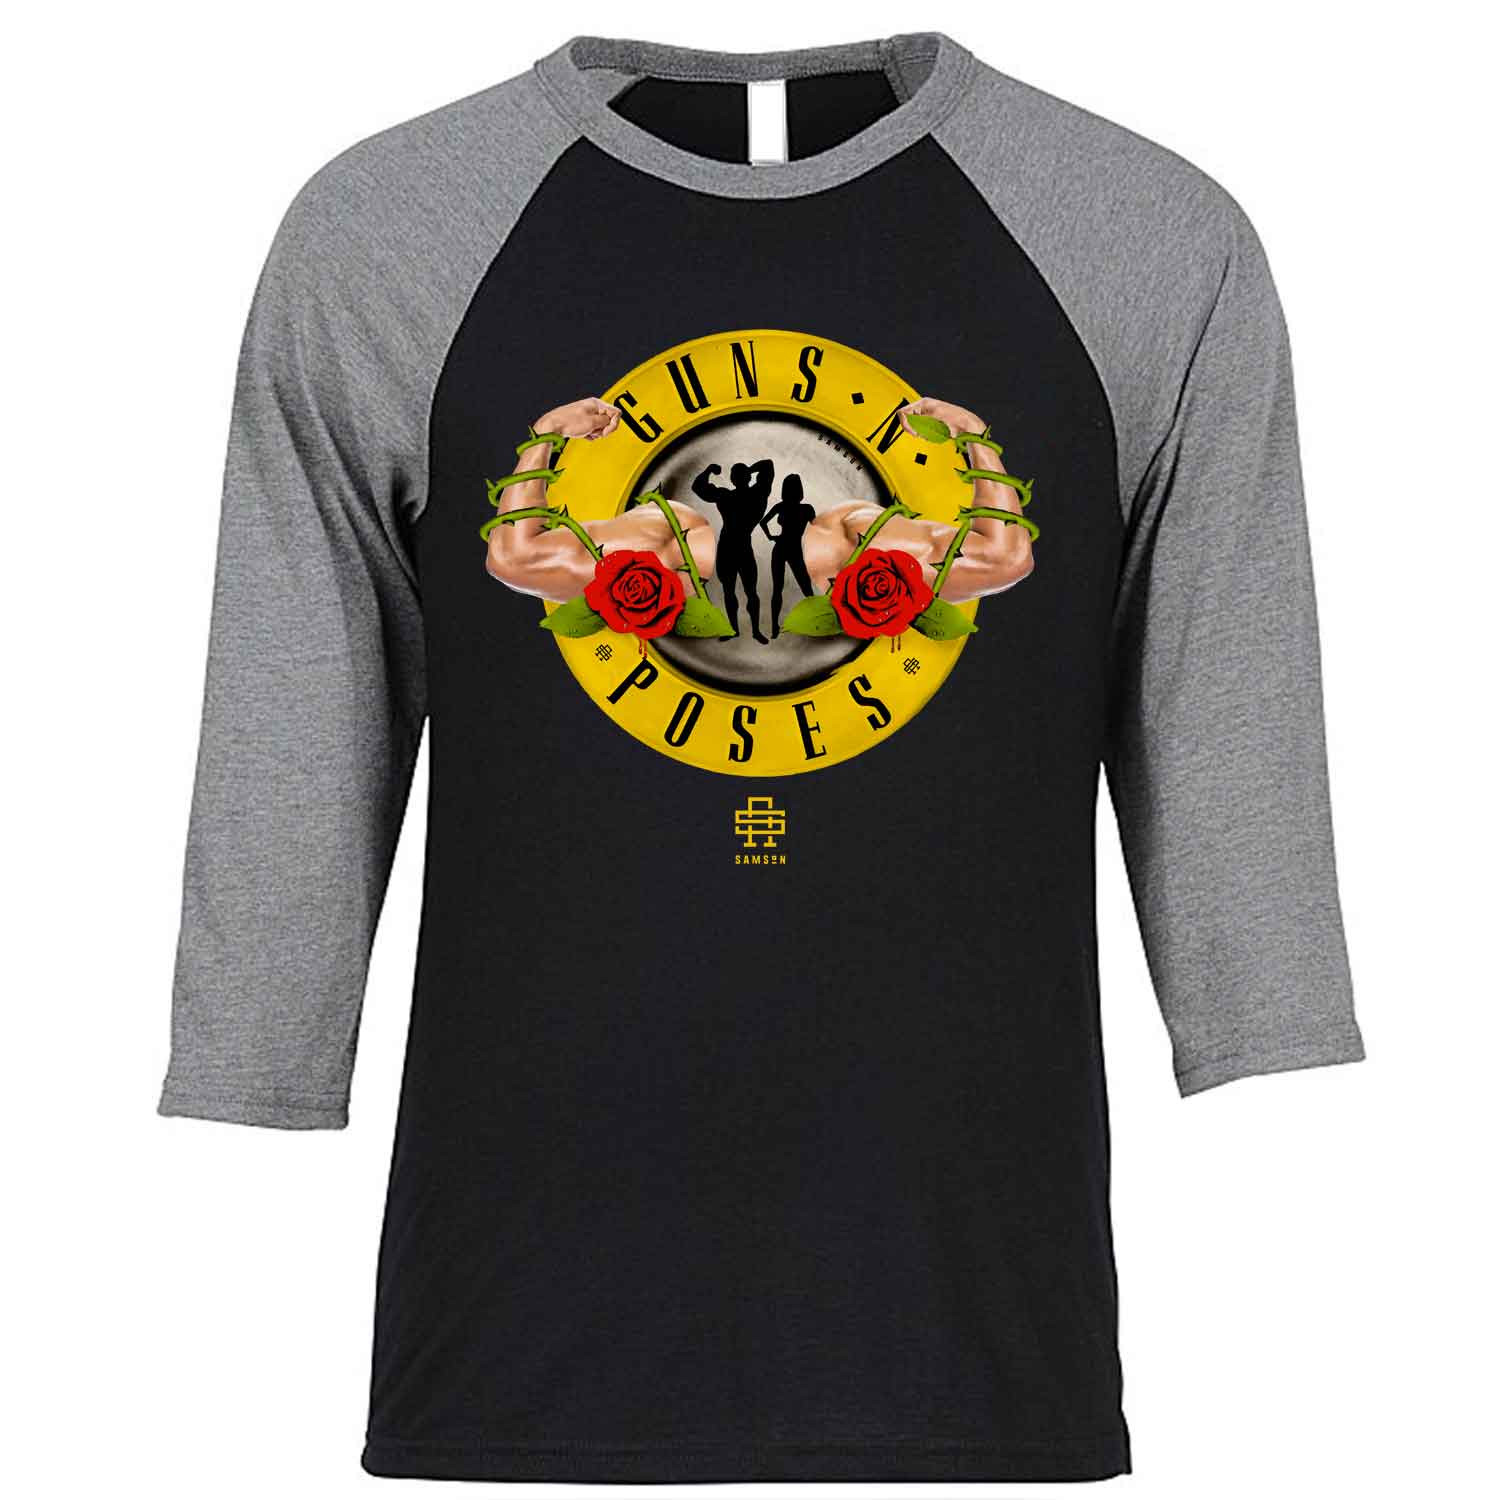 Guns N Poses Baseball T-Shirt